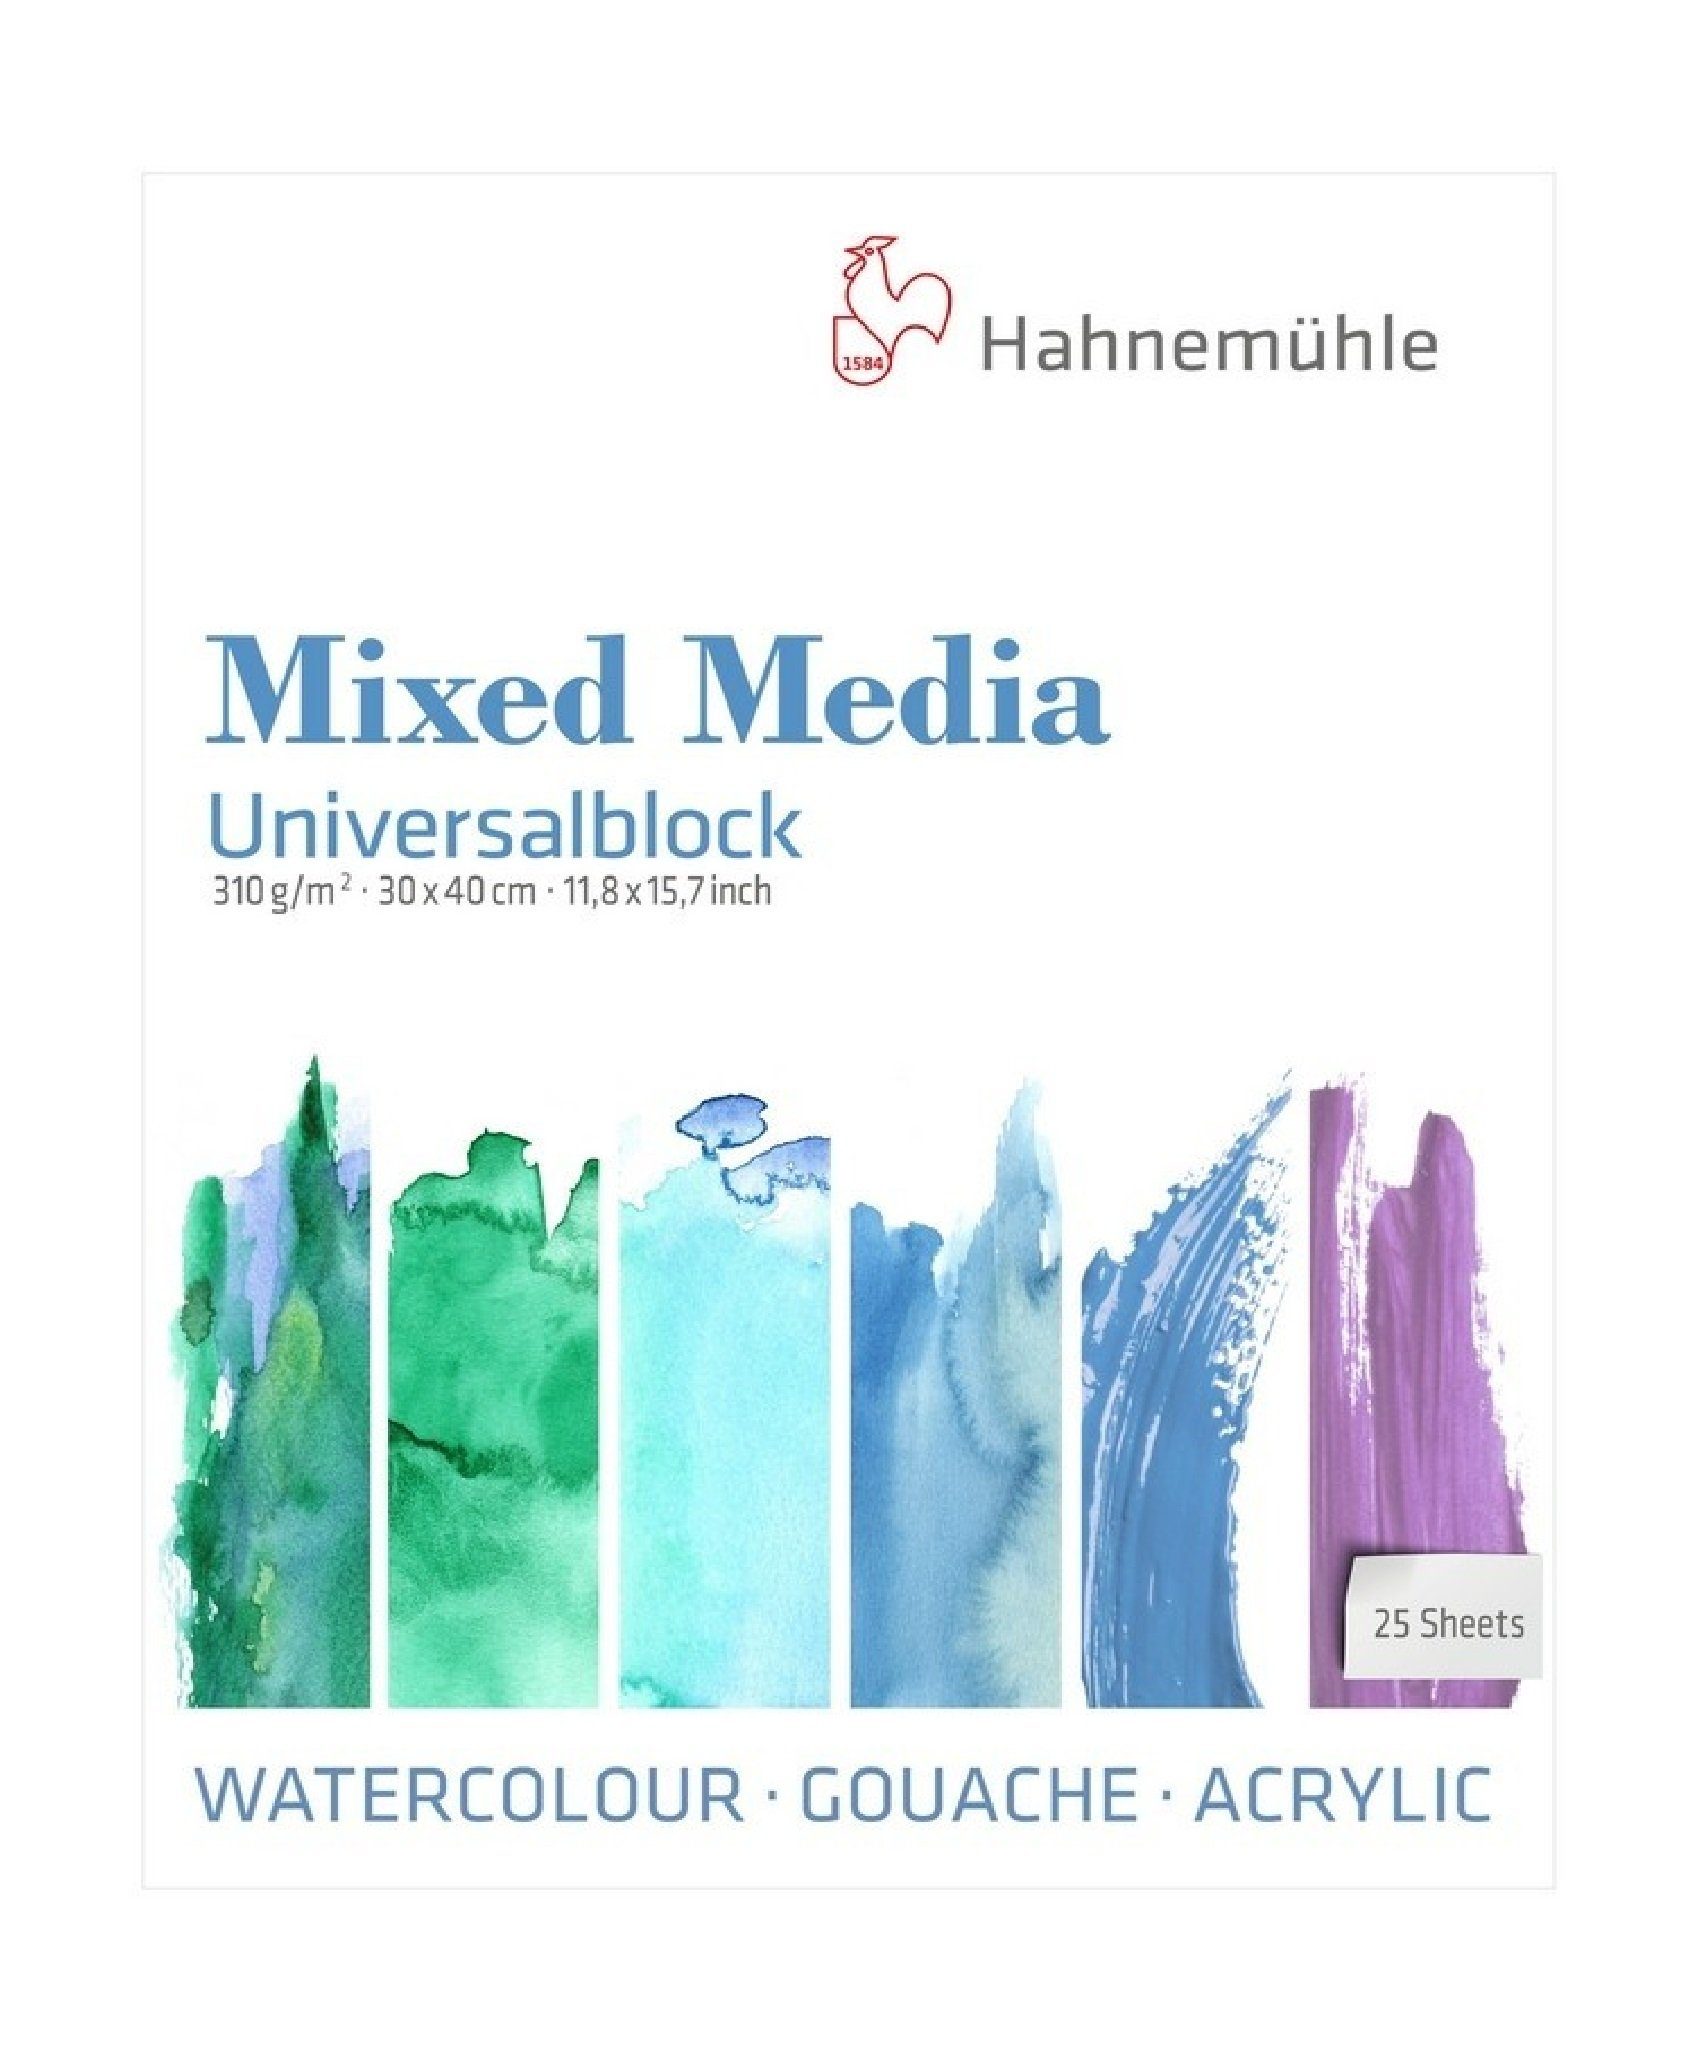 310g/m², Hahnemühle Mixed Malblock 30x40cm Media säurefrei Universalblock